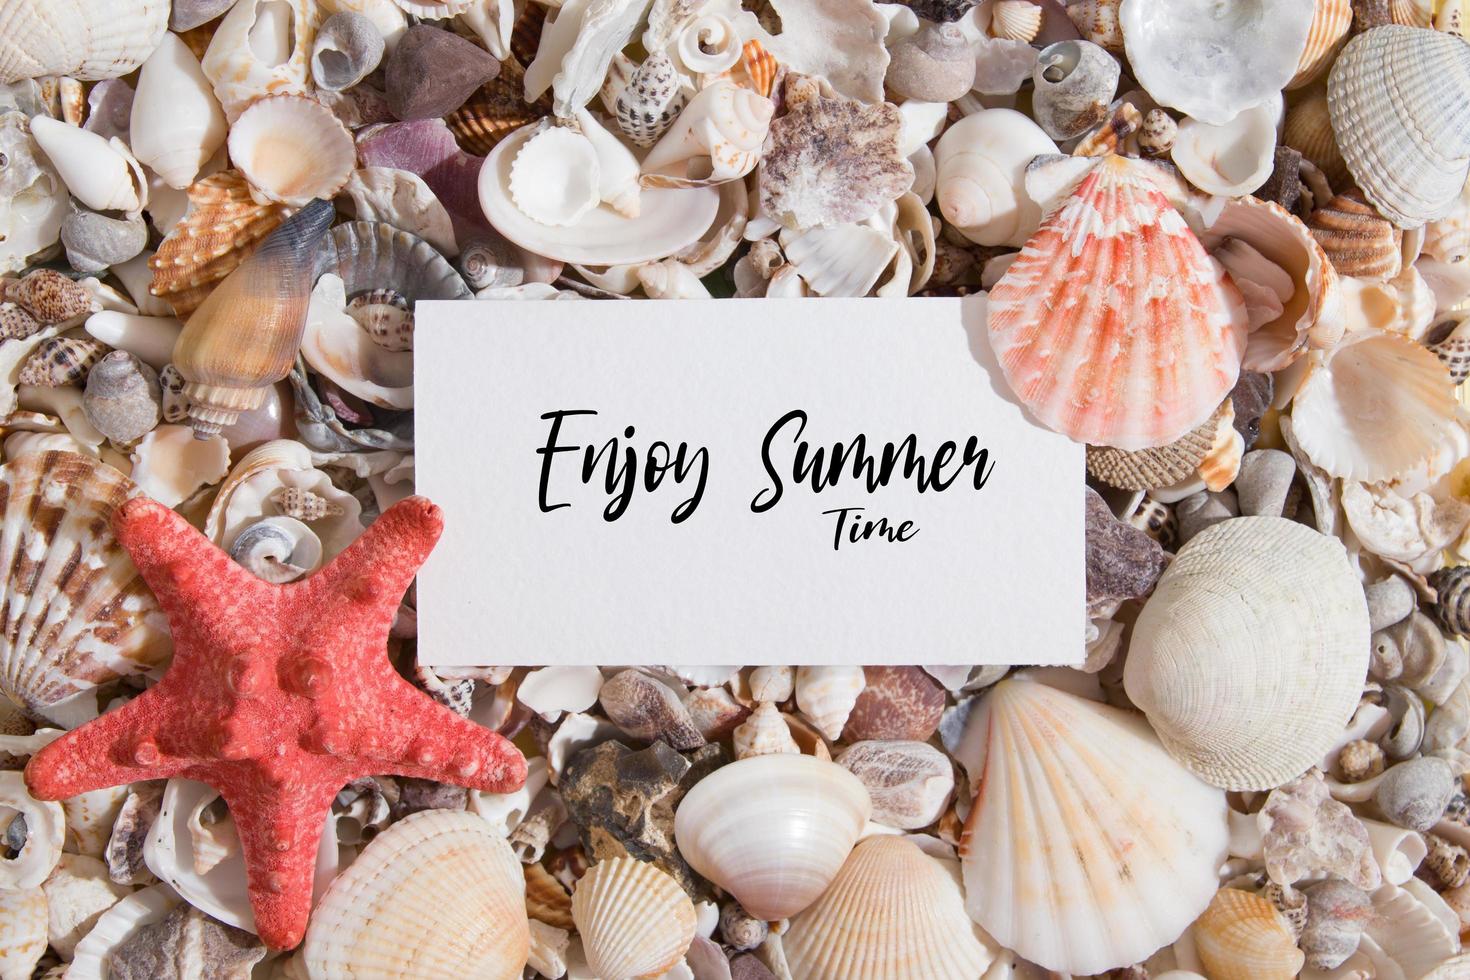 aproveite as letras de horário de verão em um pedaço de papel em conchas e estrelas do mar. texto de motivação de verão postura plana foto